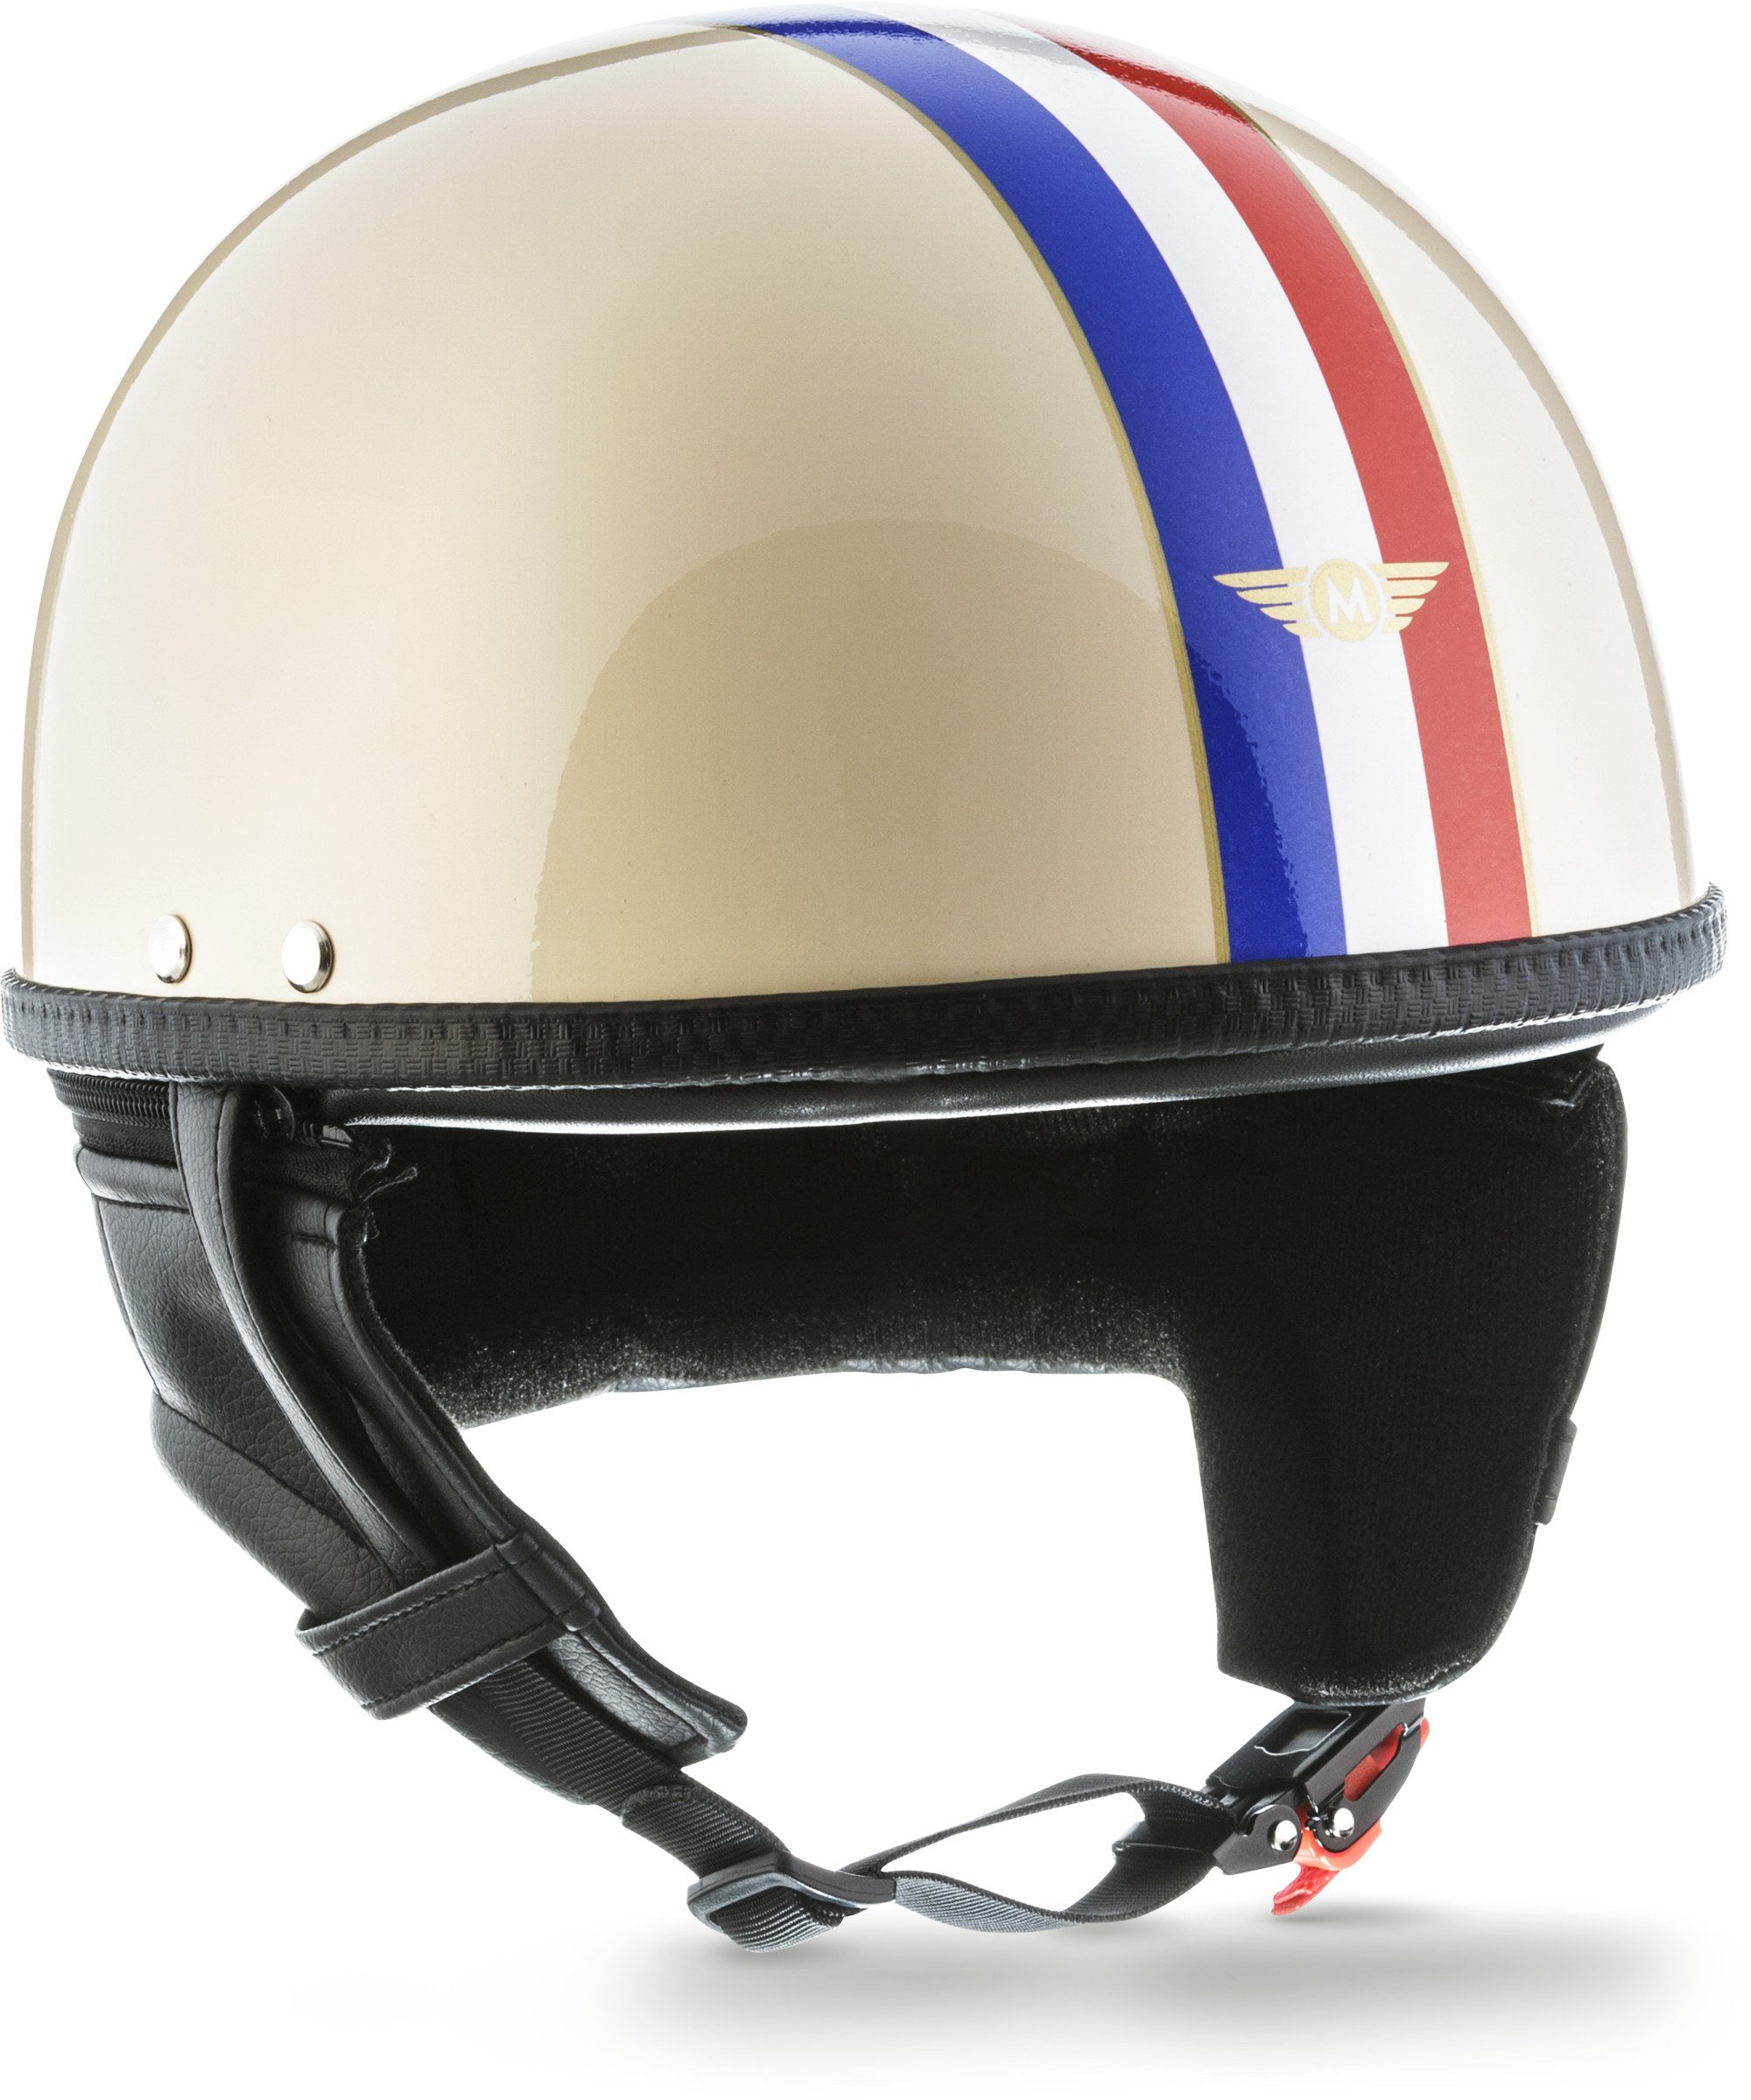 Moto Helmets® D22 „France“ · Brain-Cap · Halbschale Jet-Helm Motorrad-Helm Roller-Helm · Fiberglas Schnellverschluss SlimShell Tasche S (55-56cm)